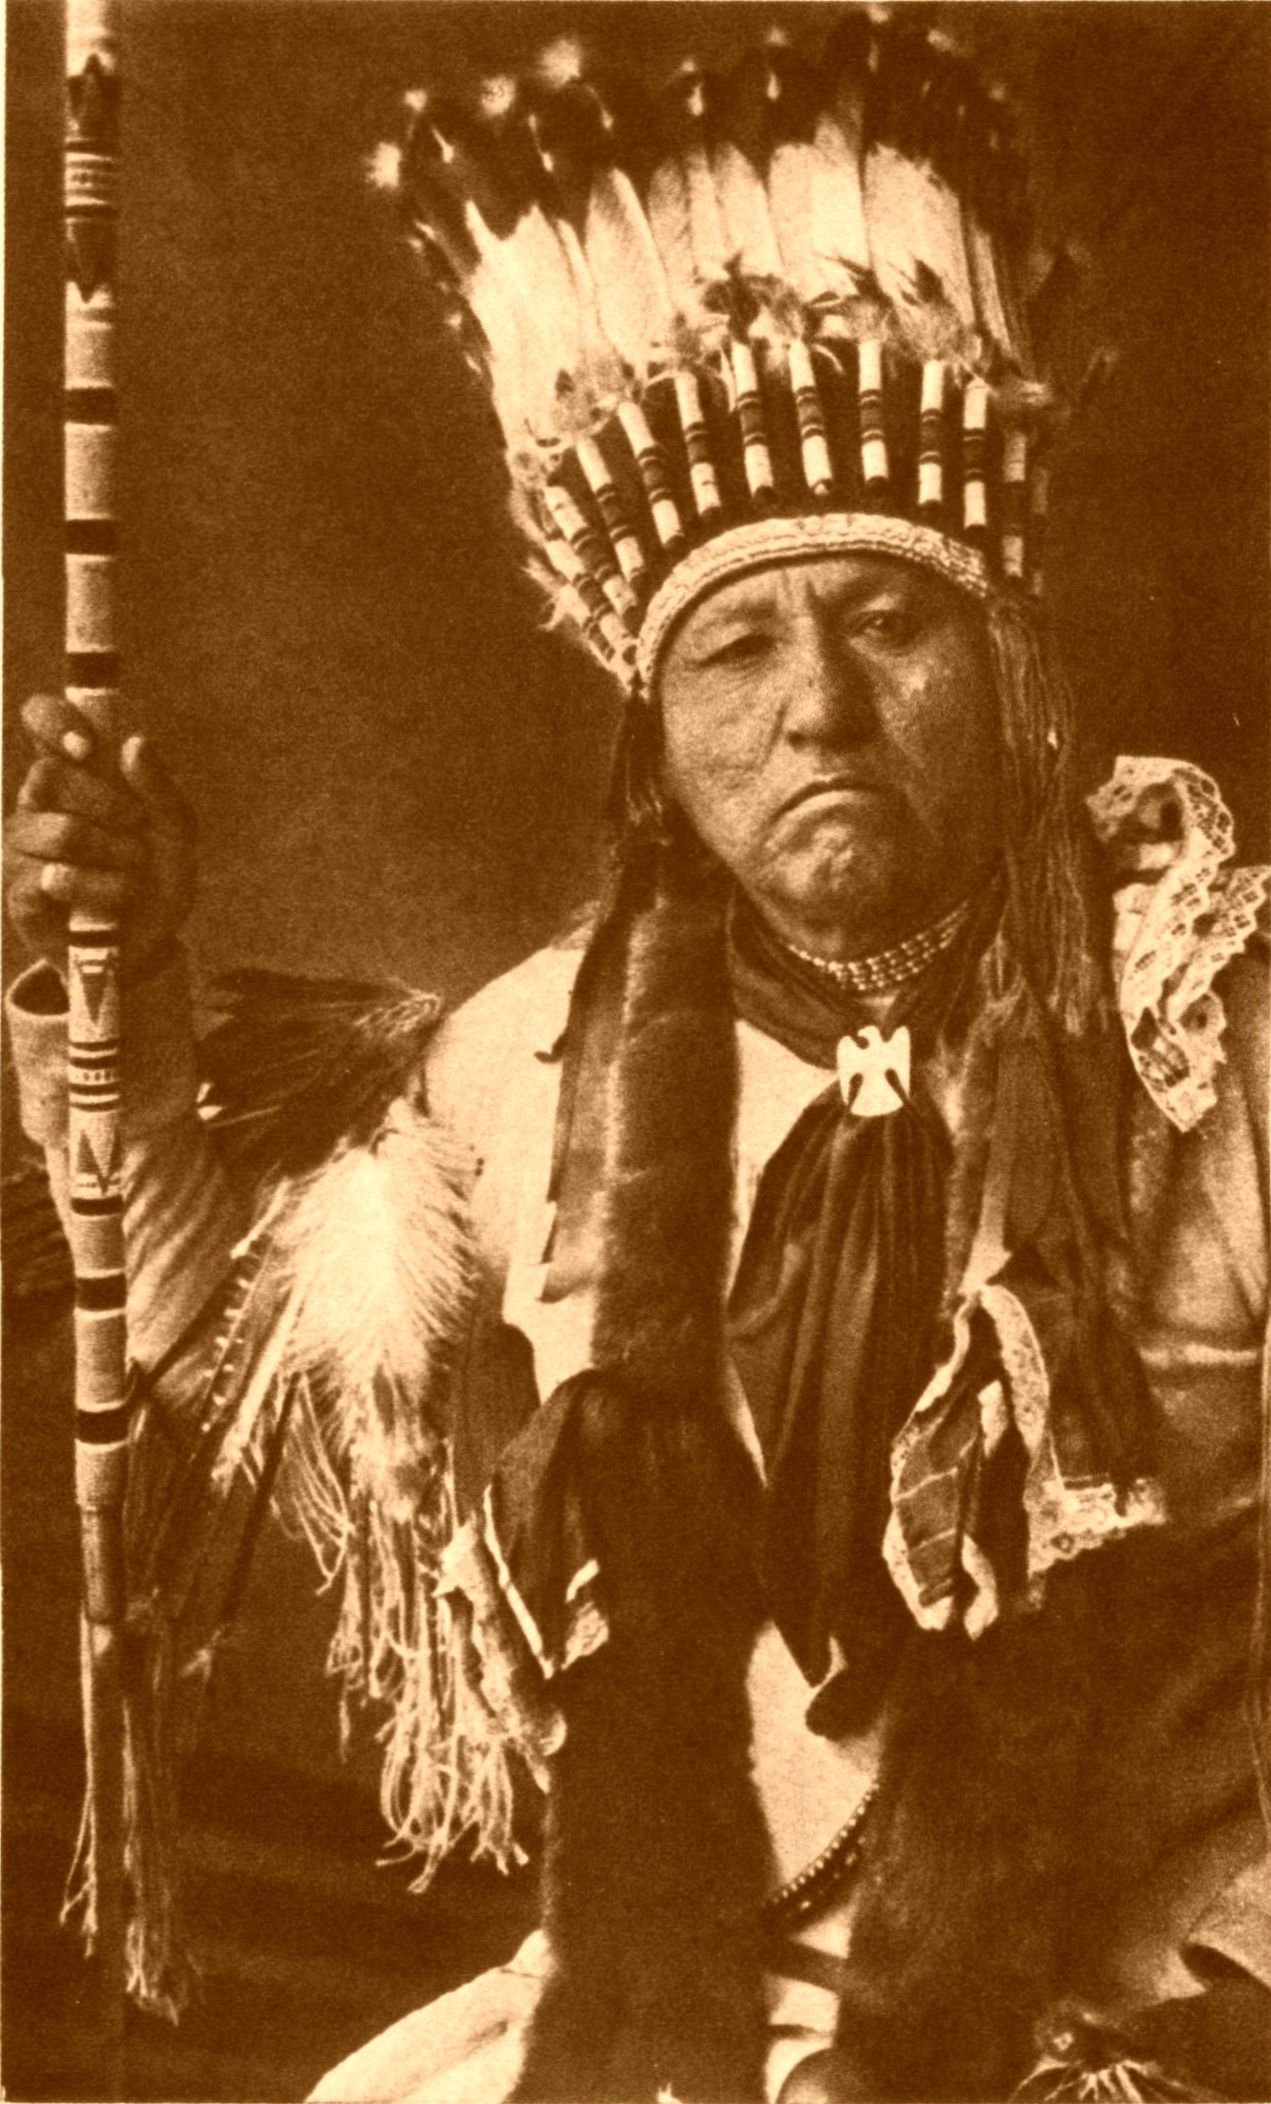 Chief Timbo